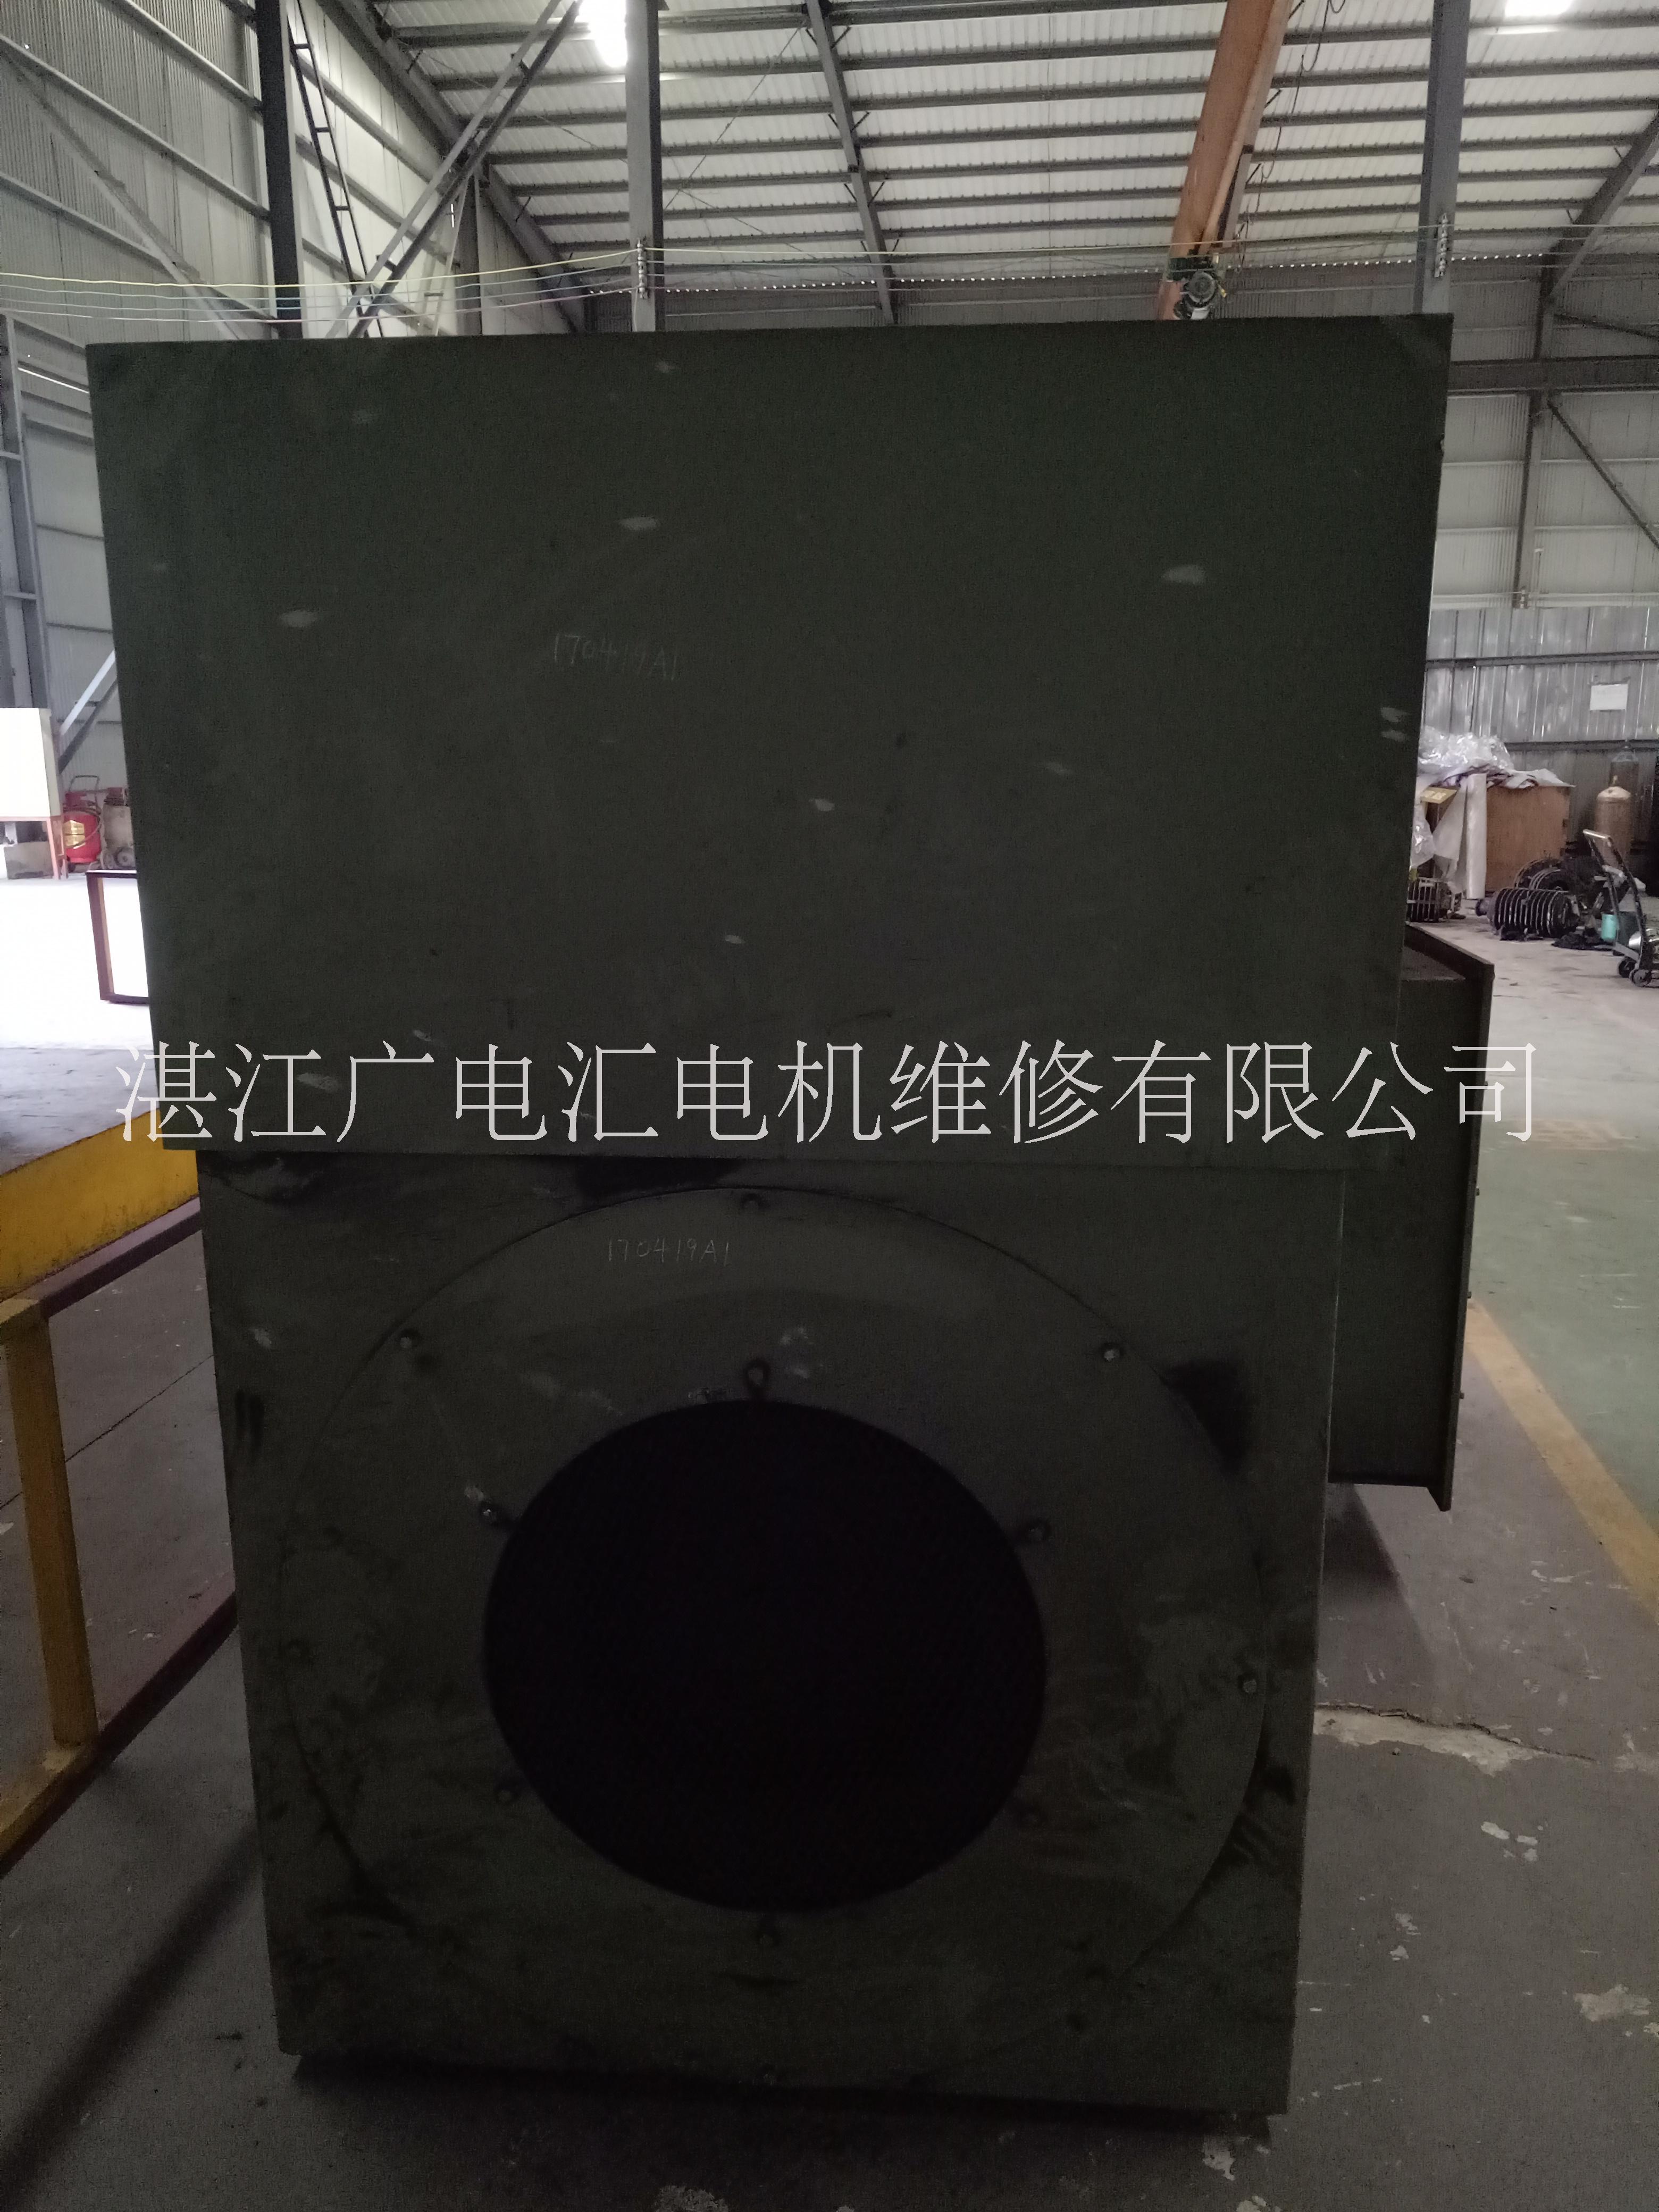 湛江市电机设备维修保养厂家电机设备维修保养